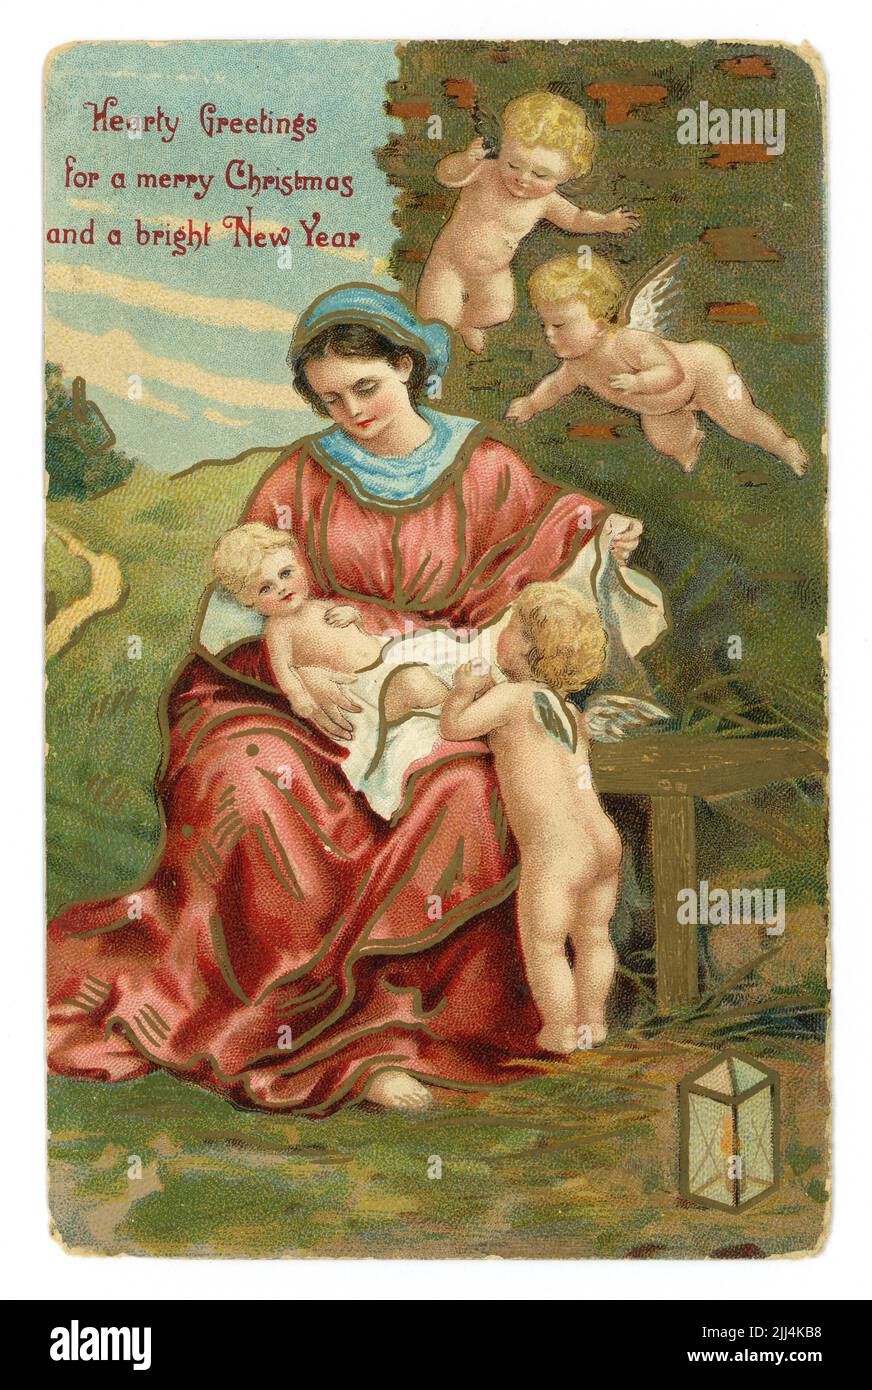 Original geprägte edwardianische Ära Weihnachtsgrüße und bebilderte Farbpostkarte mit Maria, die das Jesuskind hält, veröffentlicht /datiert 21. Dezember 1910 Stockfoto